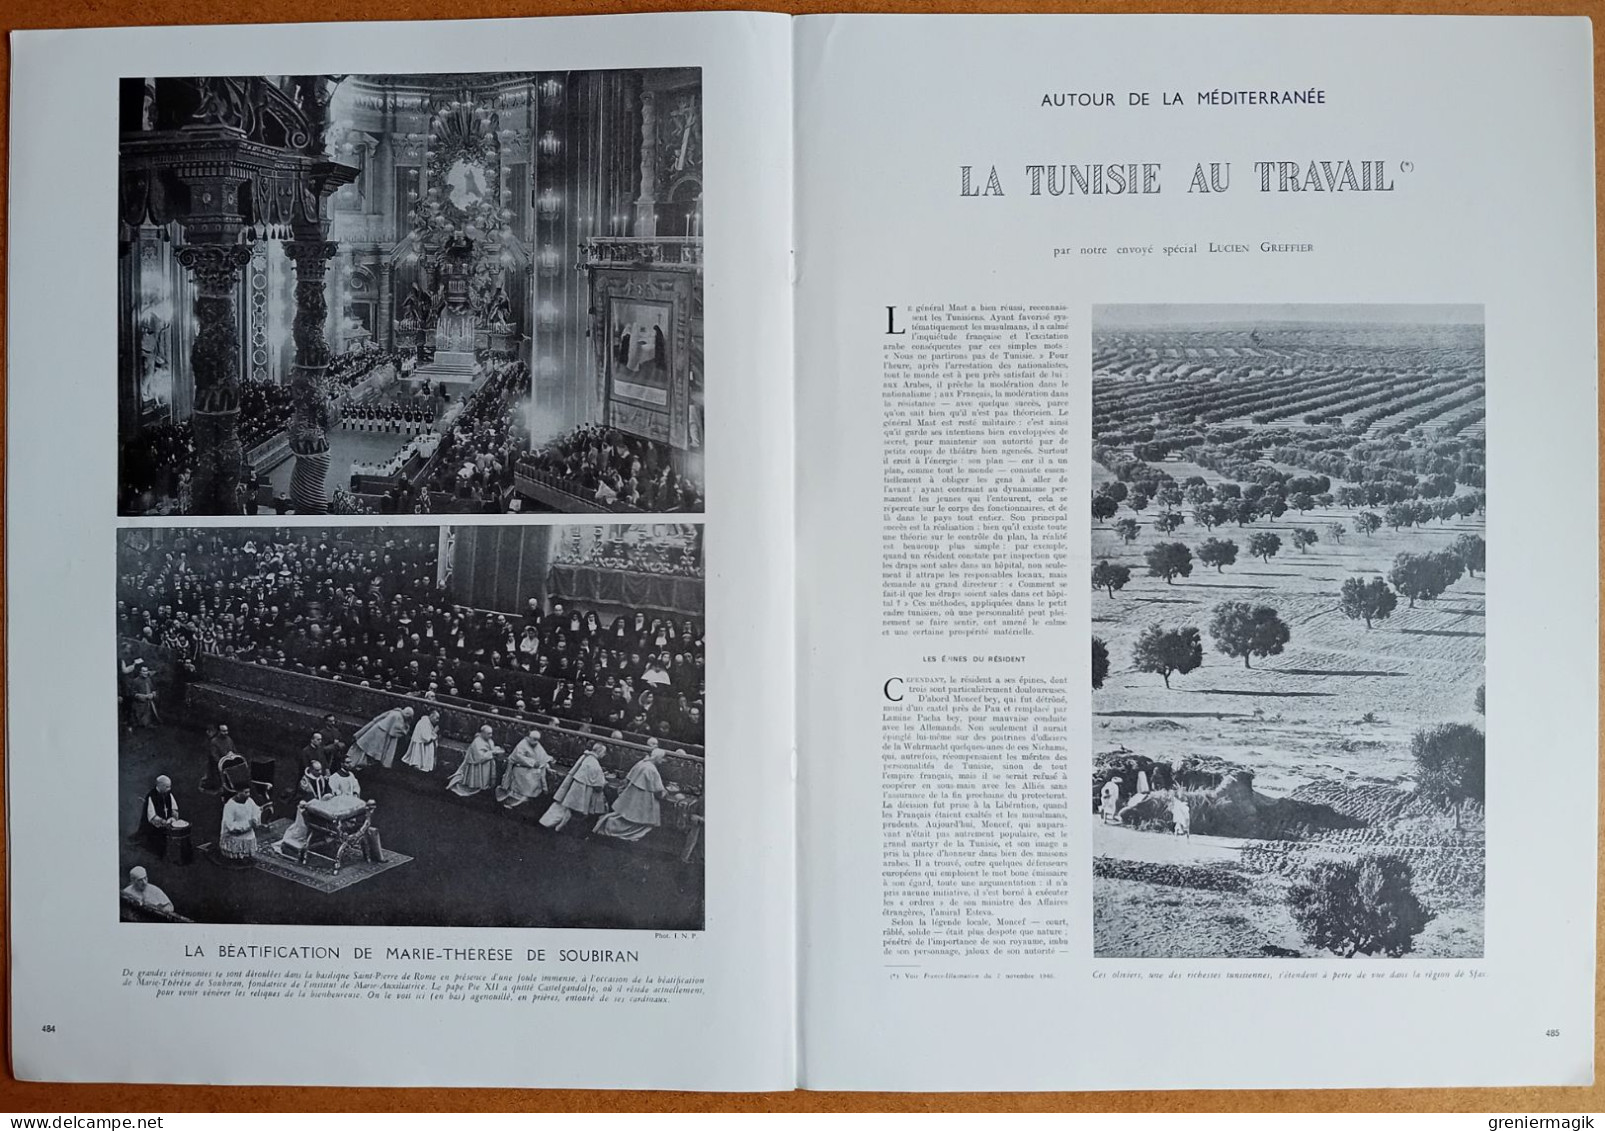 France Illustration N°58 09/11/1946 La campagne électorale à Paris/Tunisie/Assemblée générale de l'ONU/De Soubiran